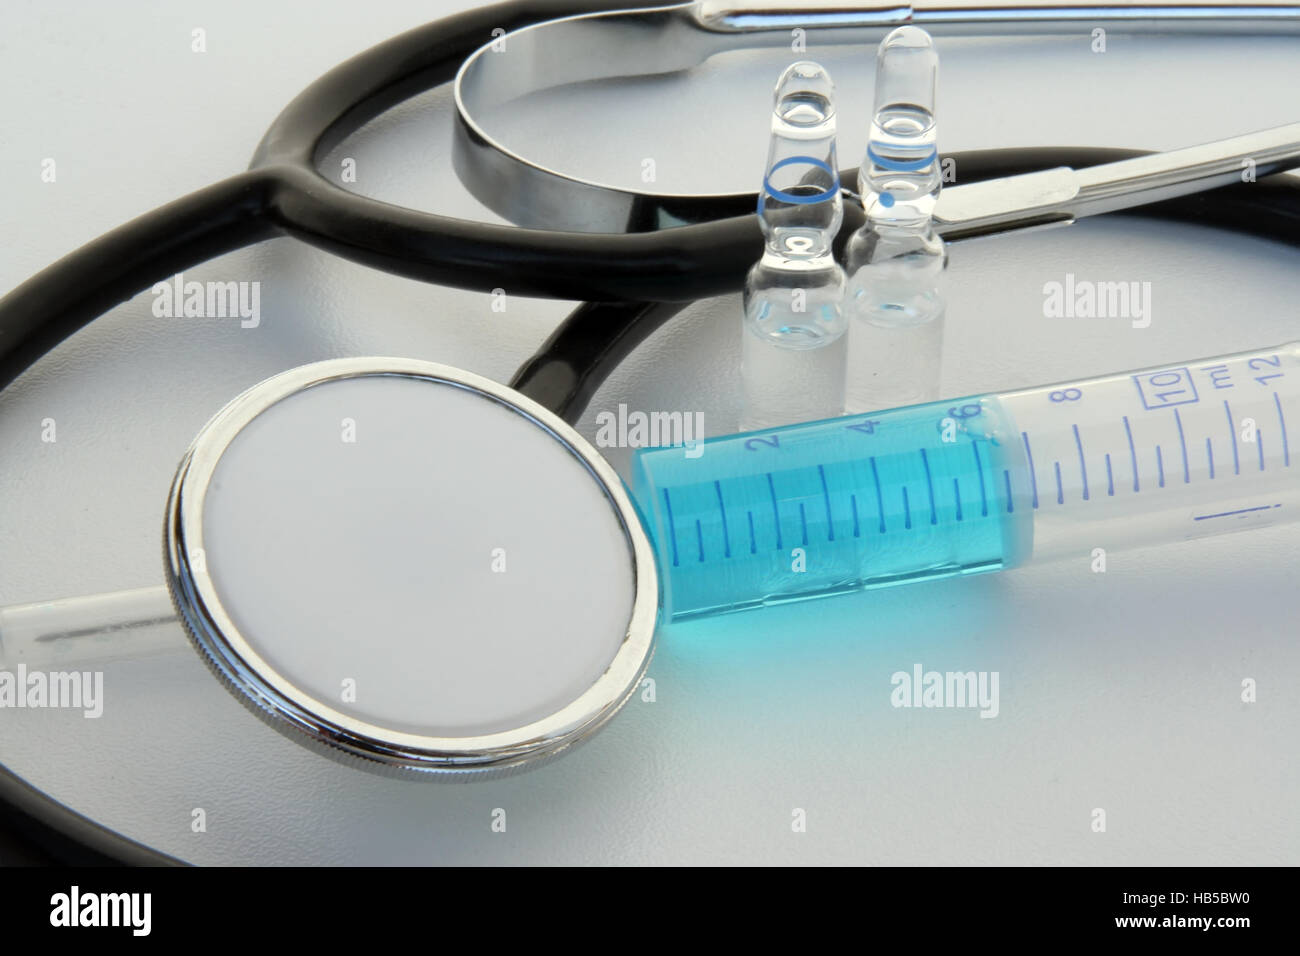 Medical tools. Medical stethoscope and syringe. Stock Photo